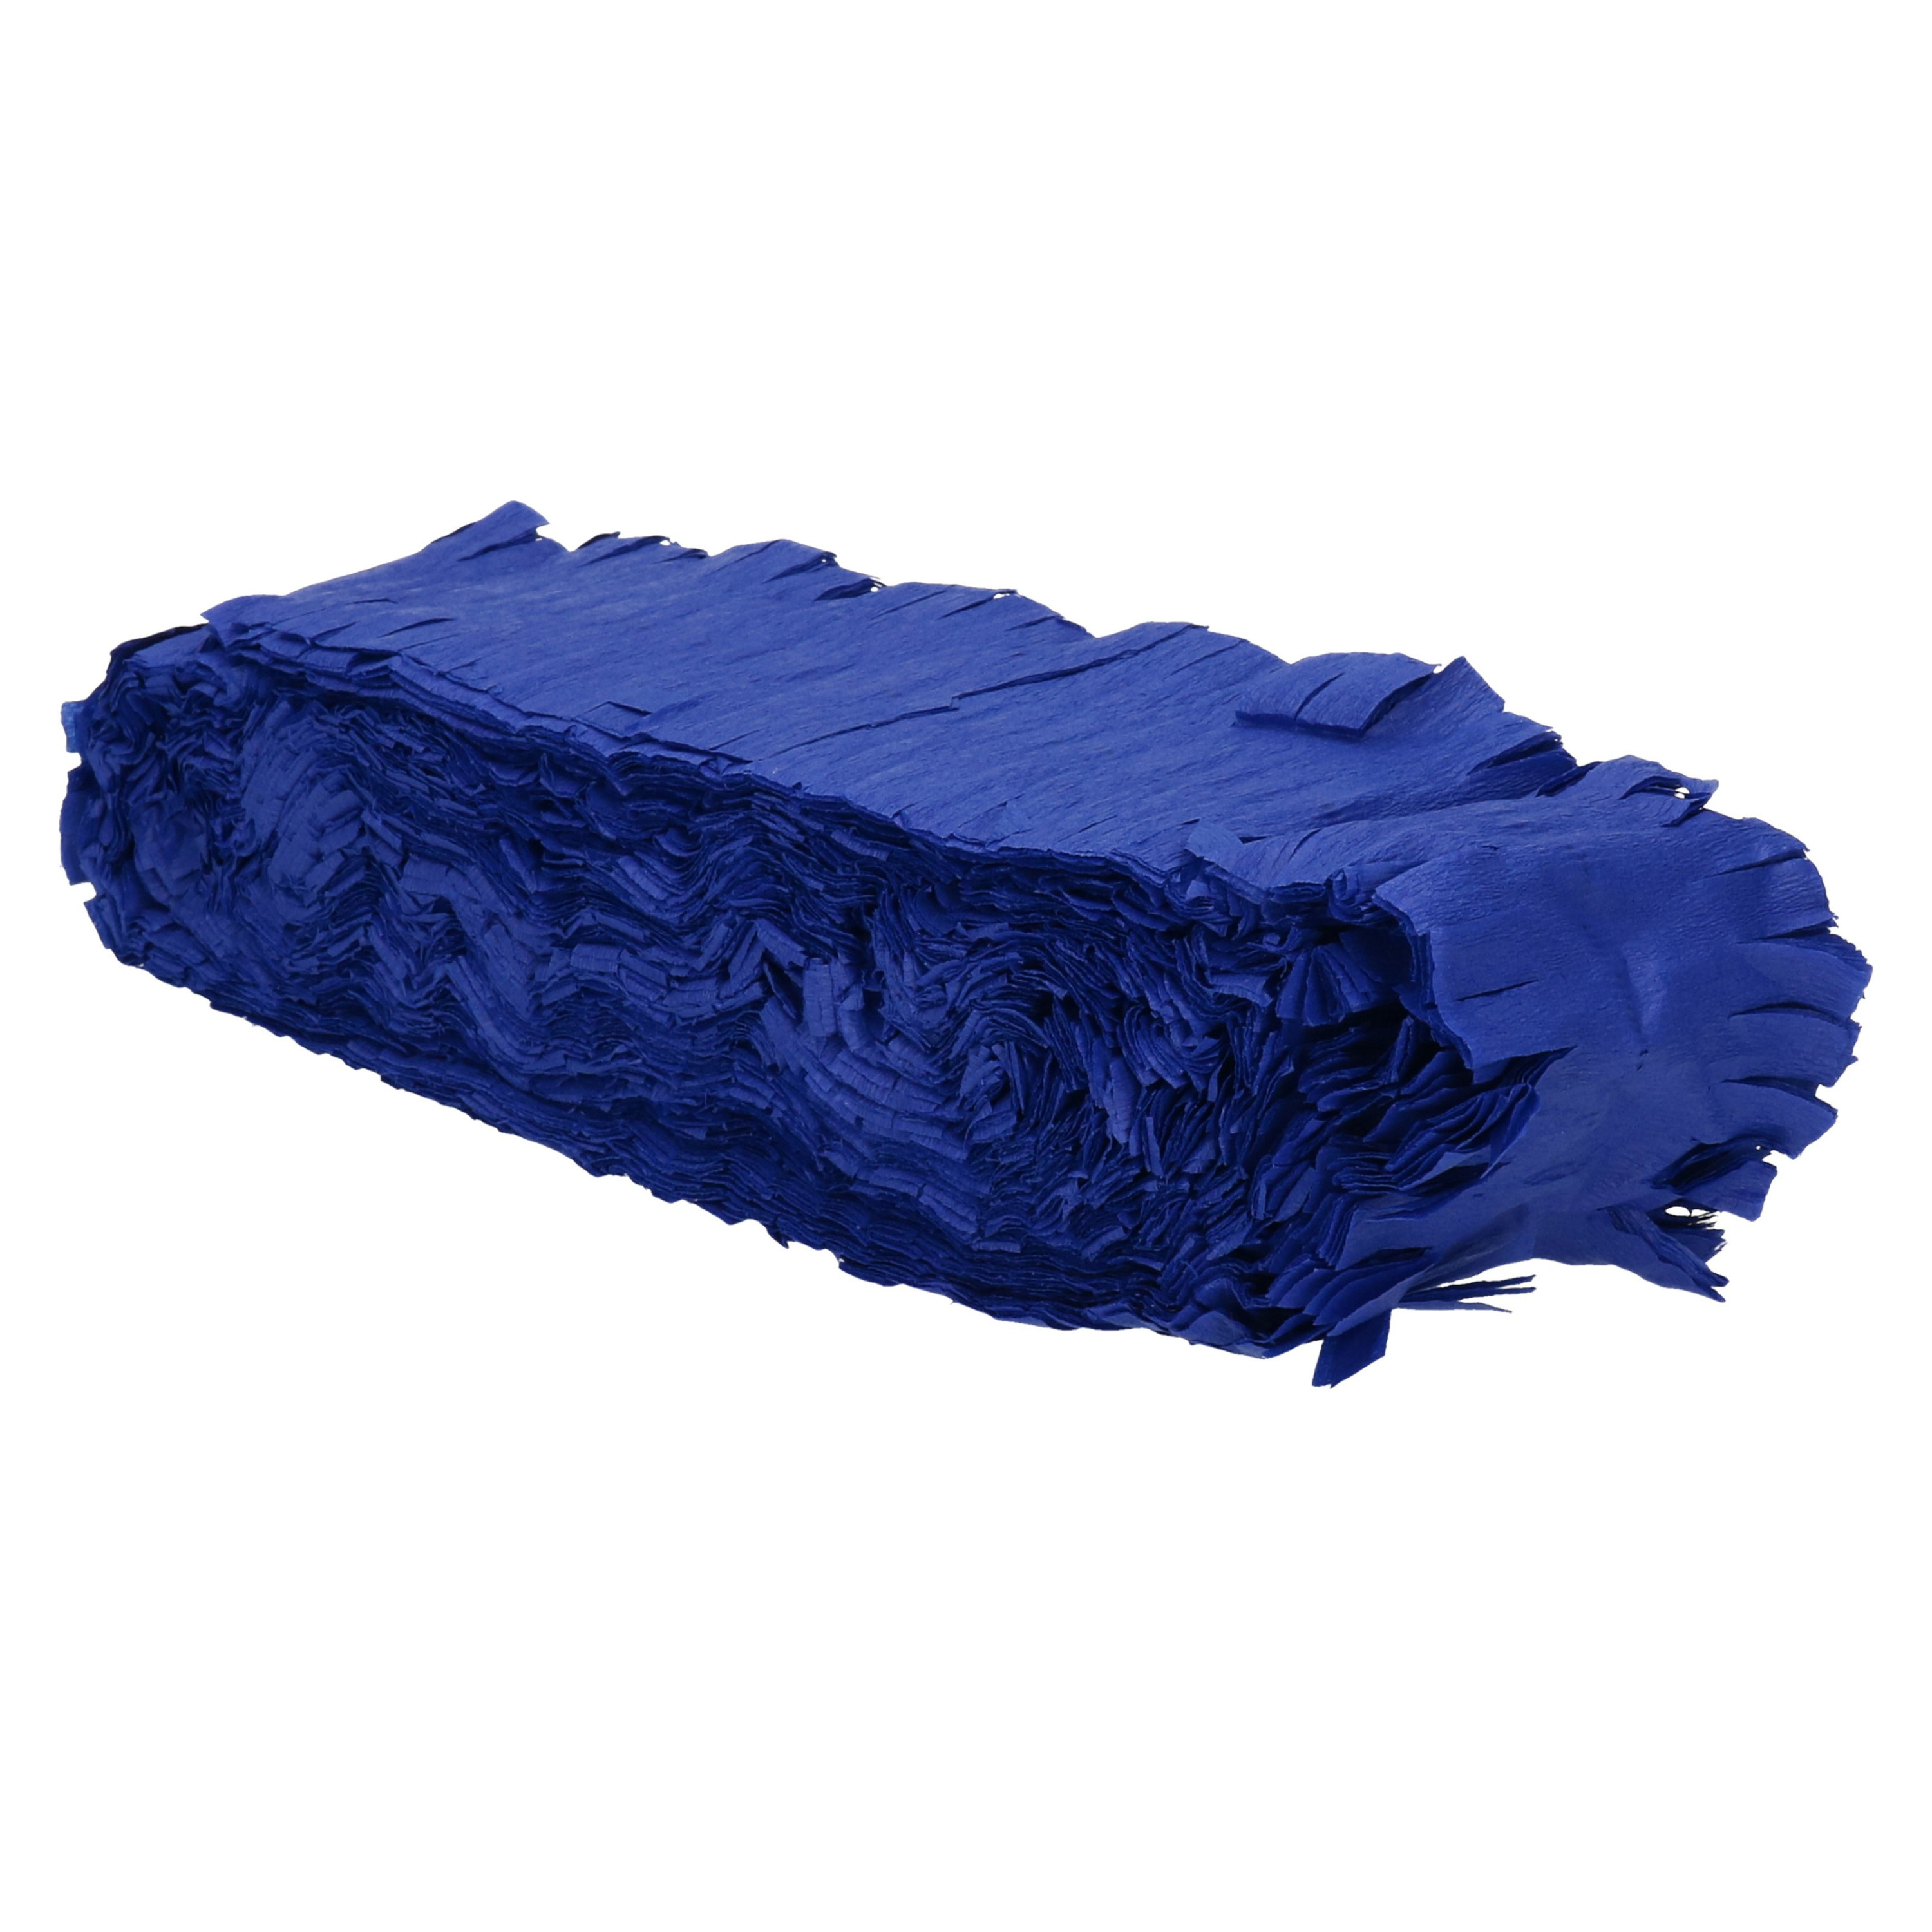 Feest-verjaardag versiering slingers donkerblauw 24 meter crepe papier